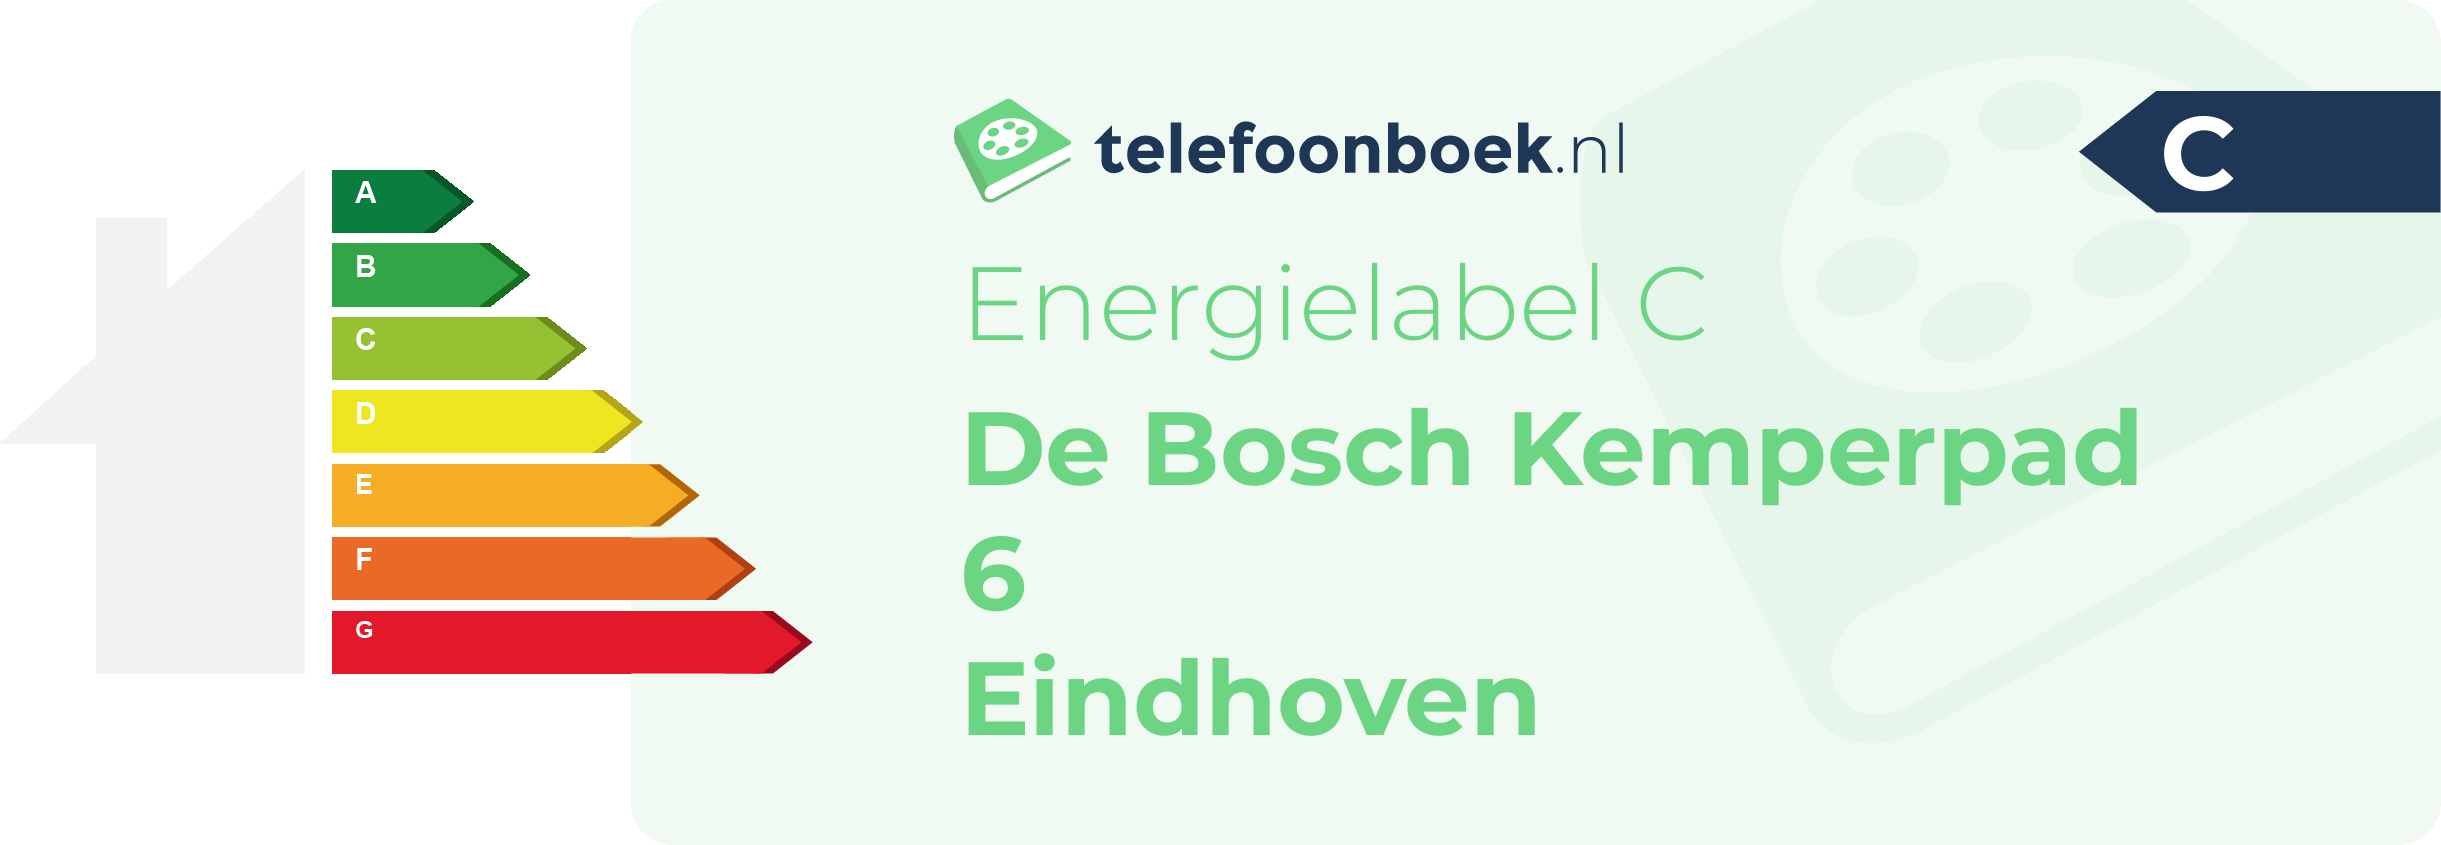 Energielabel De Bosch Kemperpad 6 Eindhoven